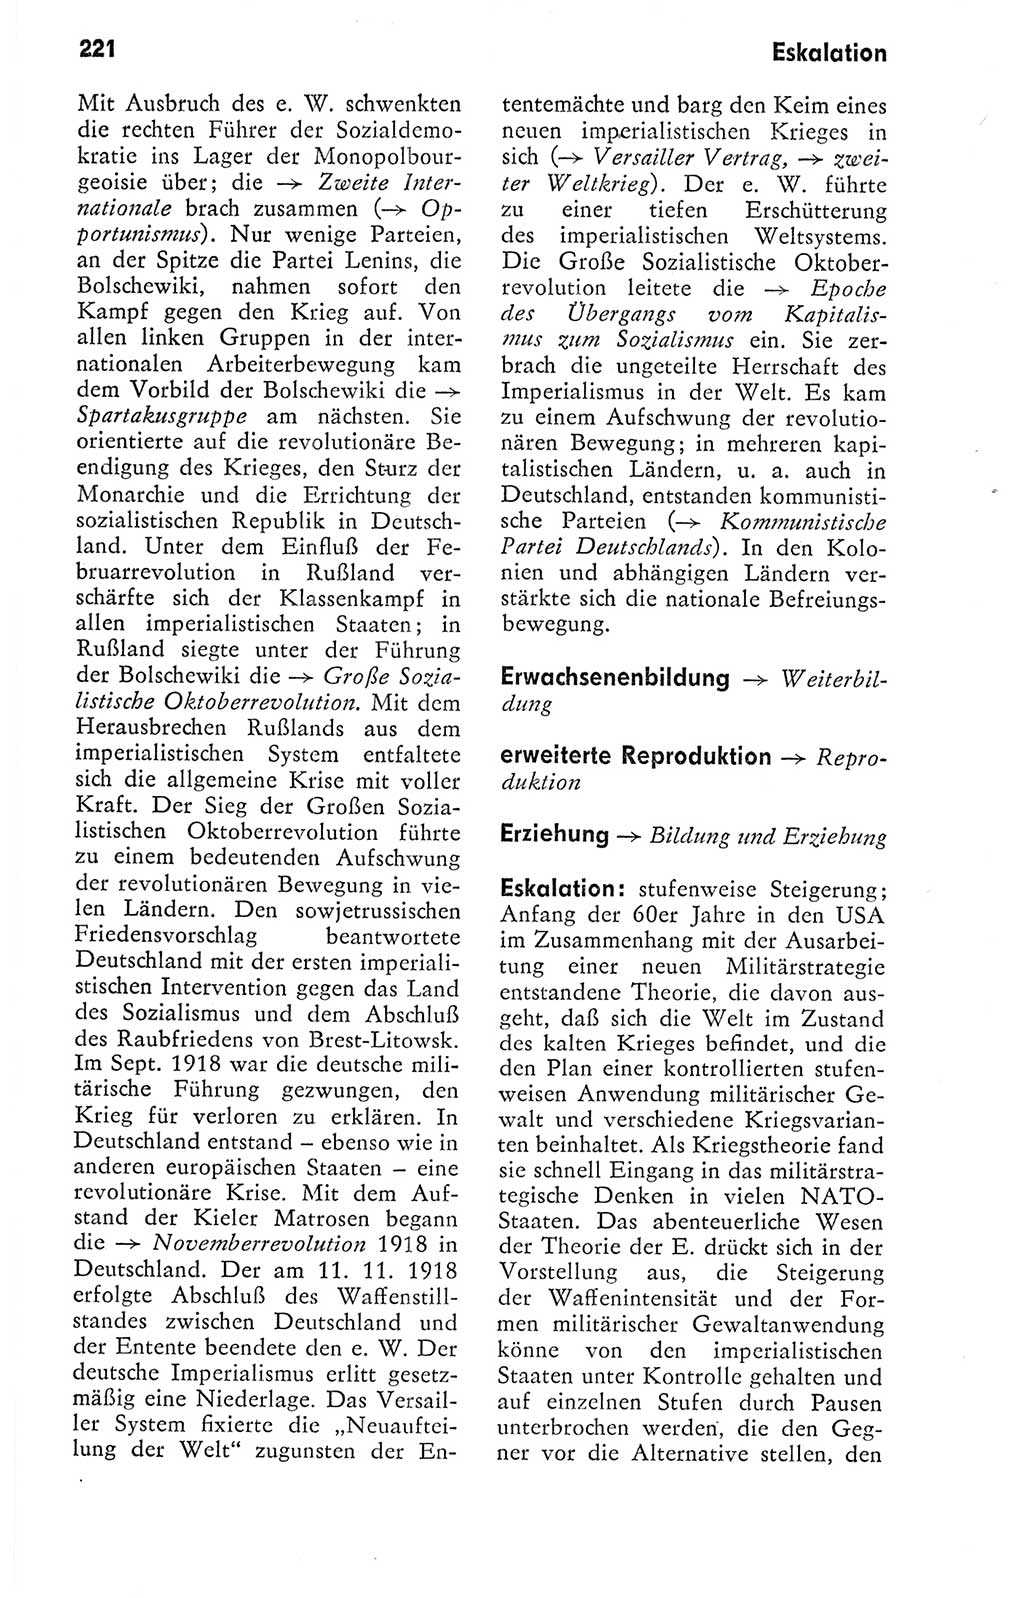 Kleines politisches Wörterbuch [Deutsche Demokratische Republik (DDR)] 1978, Seite 221 (Kl. pol. Wb. DDR 1978, S. 221)